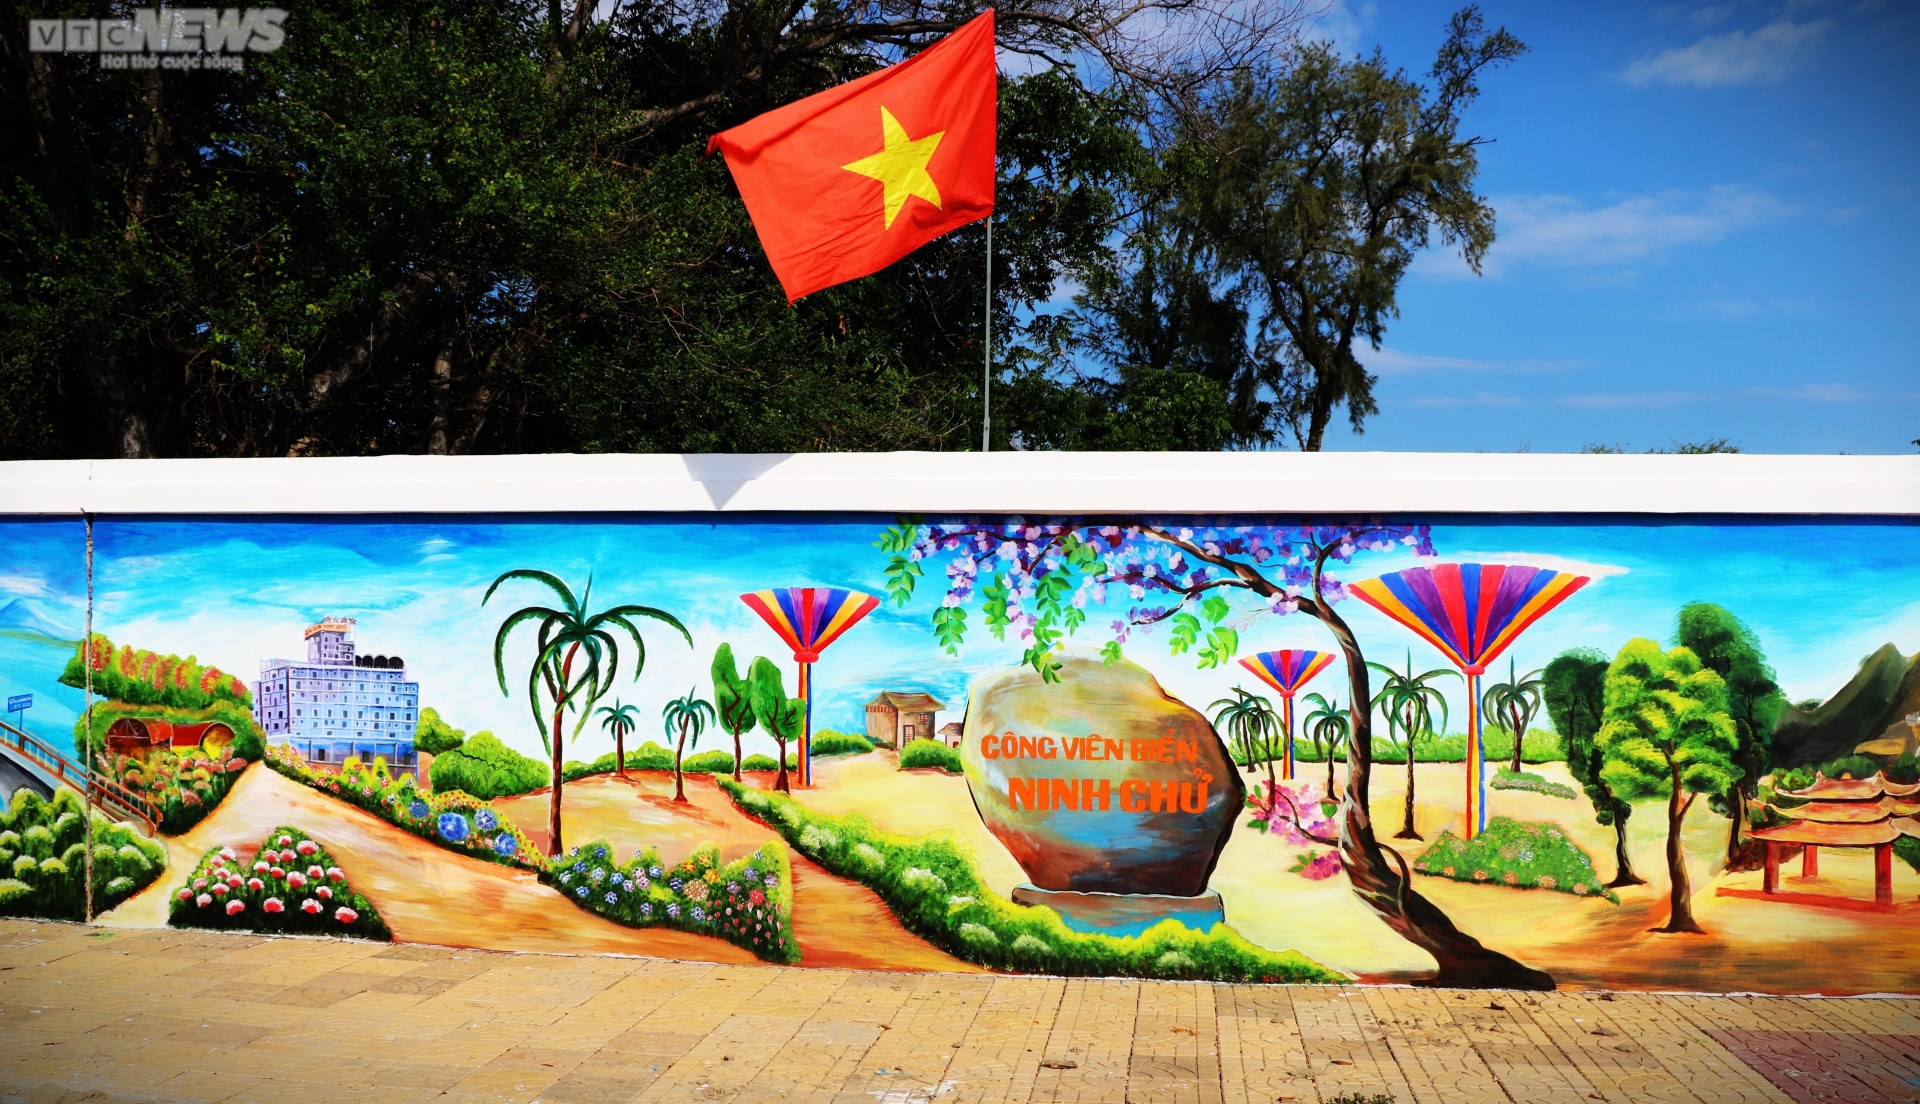 Chiêm ngưỡng bức tường tranh bích họa ven biển Ninh Thuận xác lập kỷ lục Việt Nam  - 8